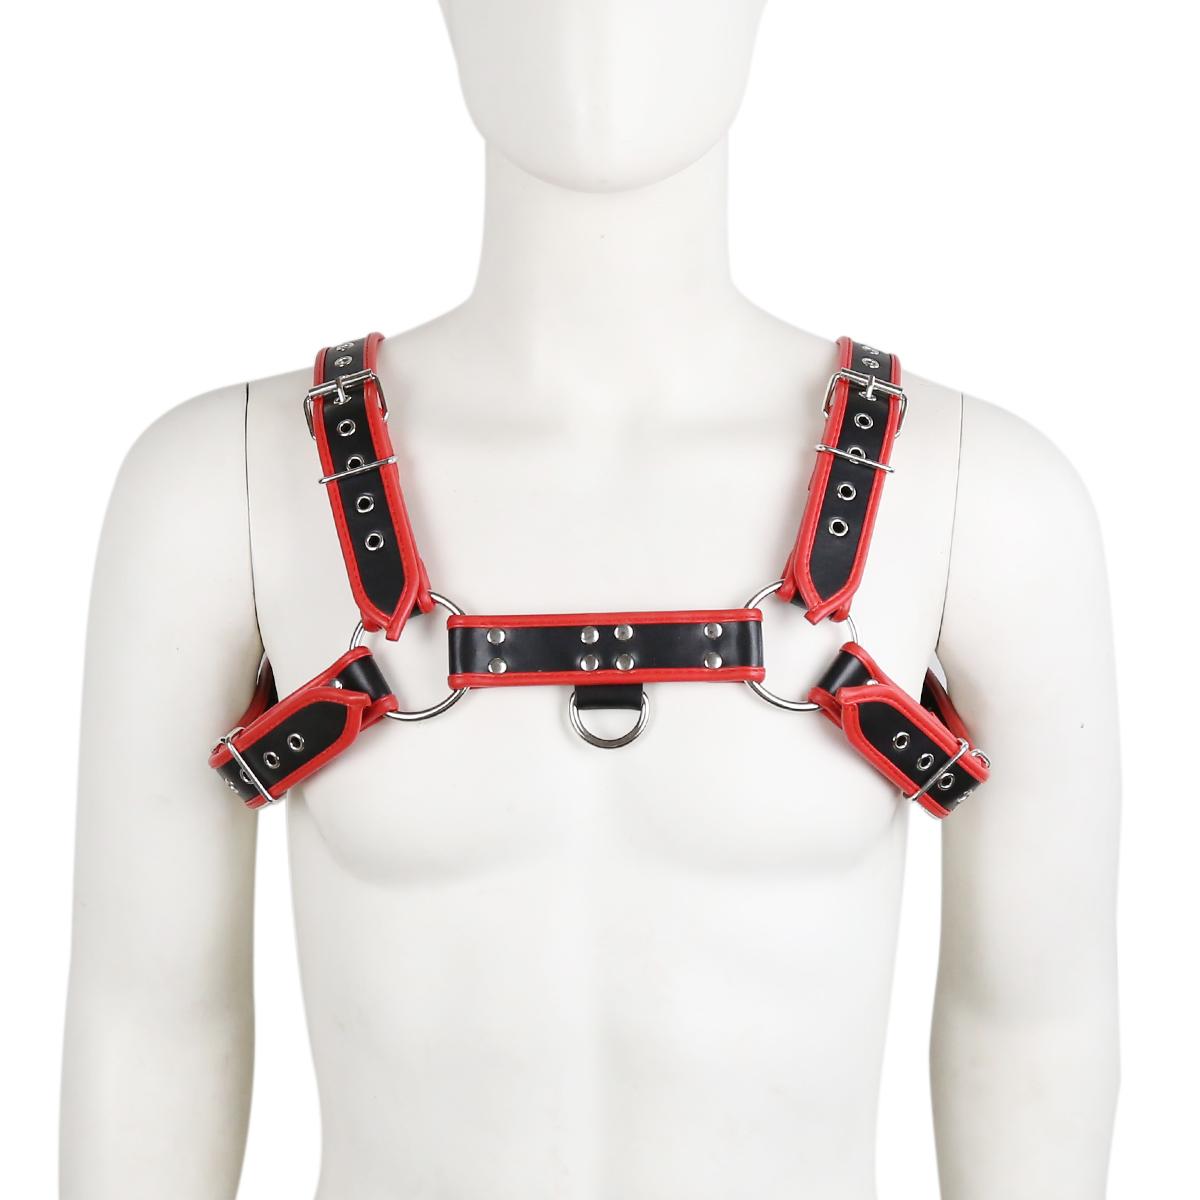 Adjustable Pu Leather Chest Belts Bdsm Bondage Gear For Gay Men Fetish Clothing